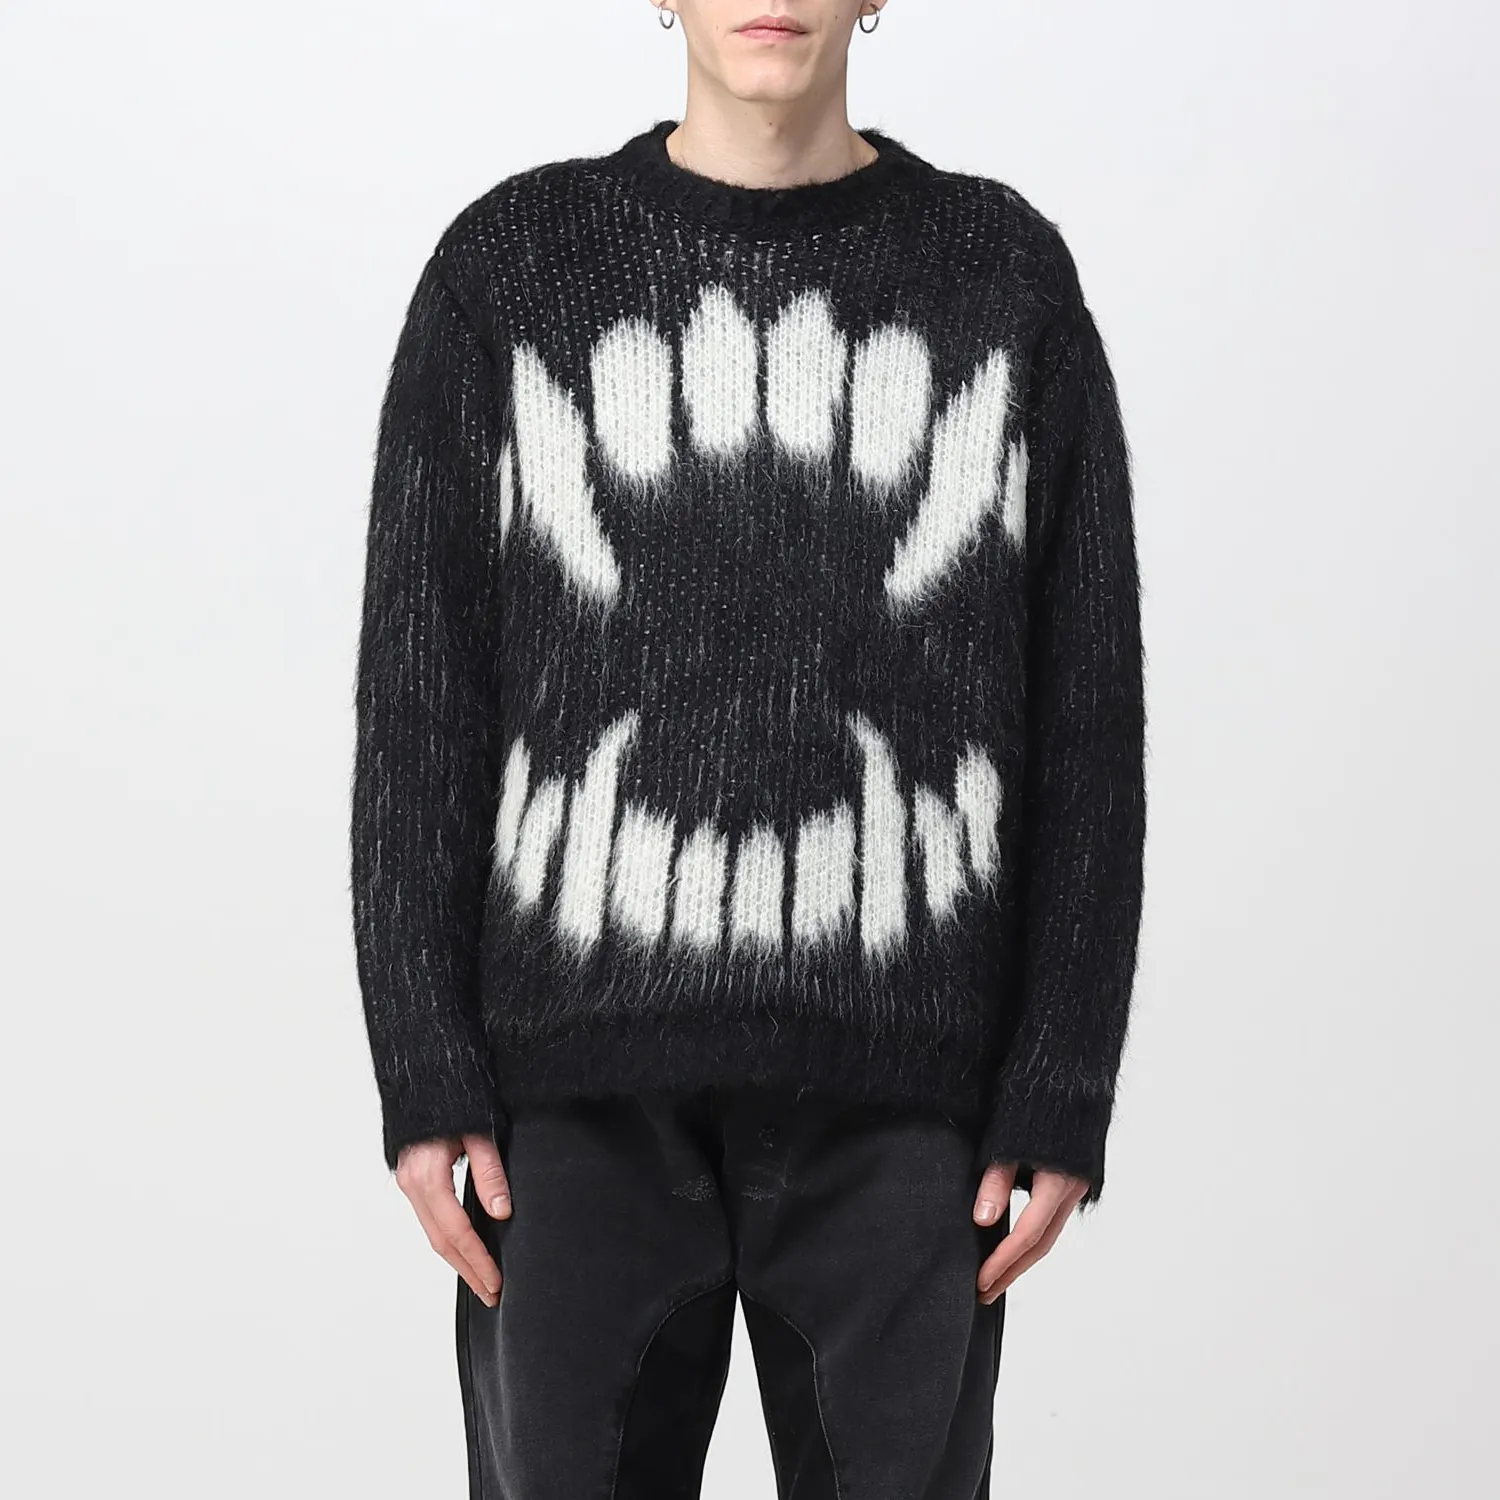 LeBo personalizado hombres moda jacquard patrón Jersey de punto manga larga cepillado peludo alpaca lana mohair suéter